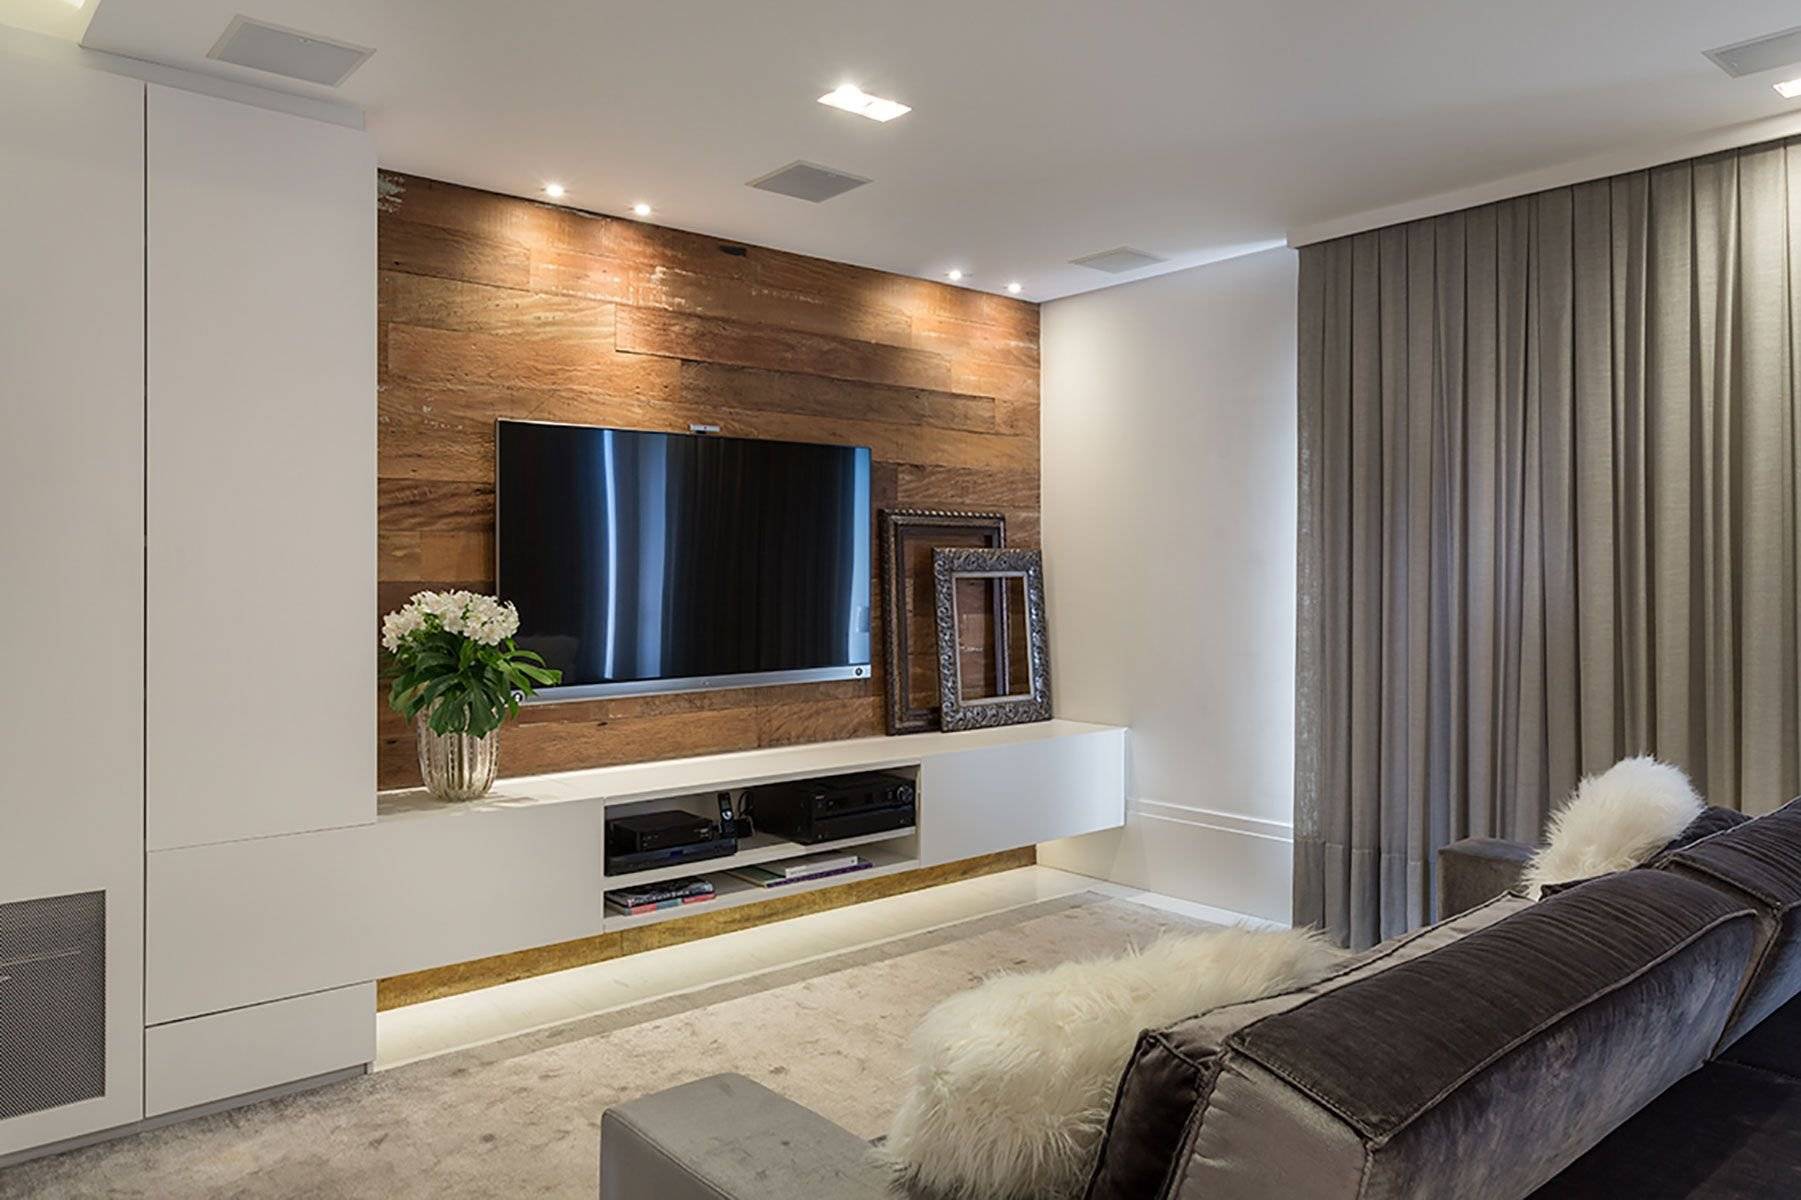 13 удачных идей для оформления стены с телевизором в гостиной